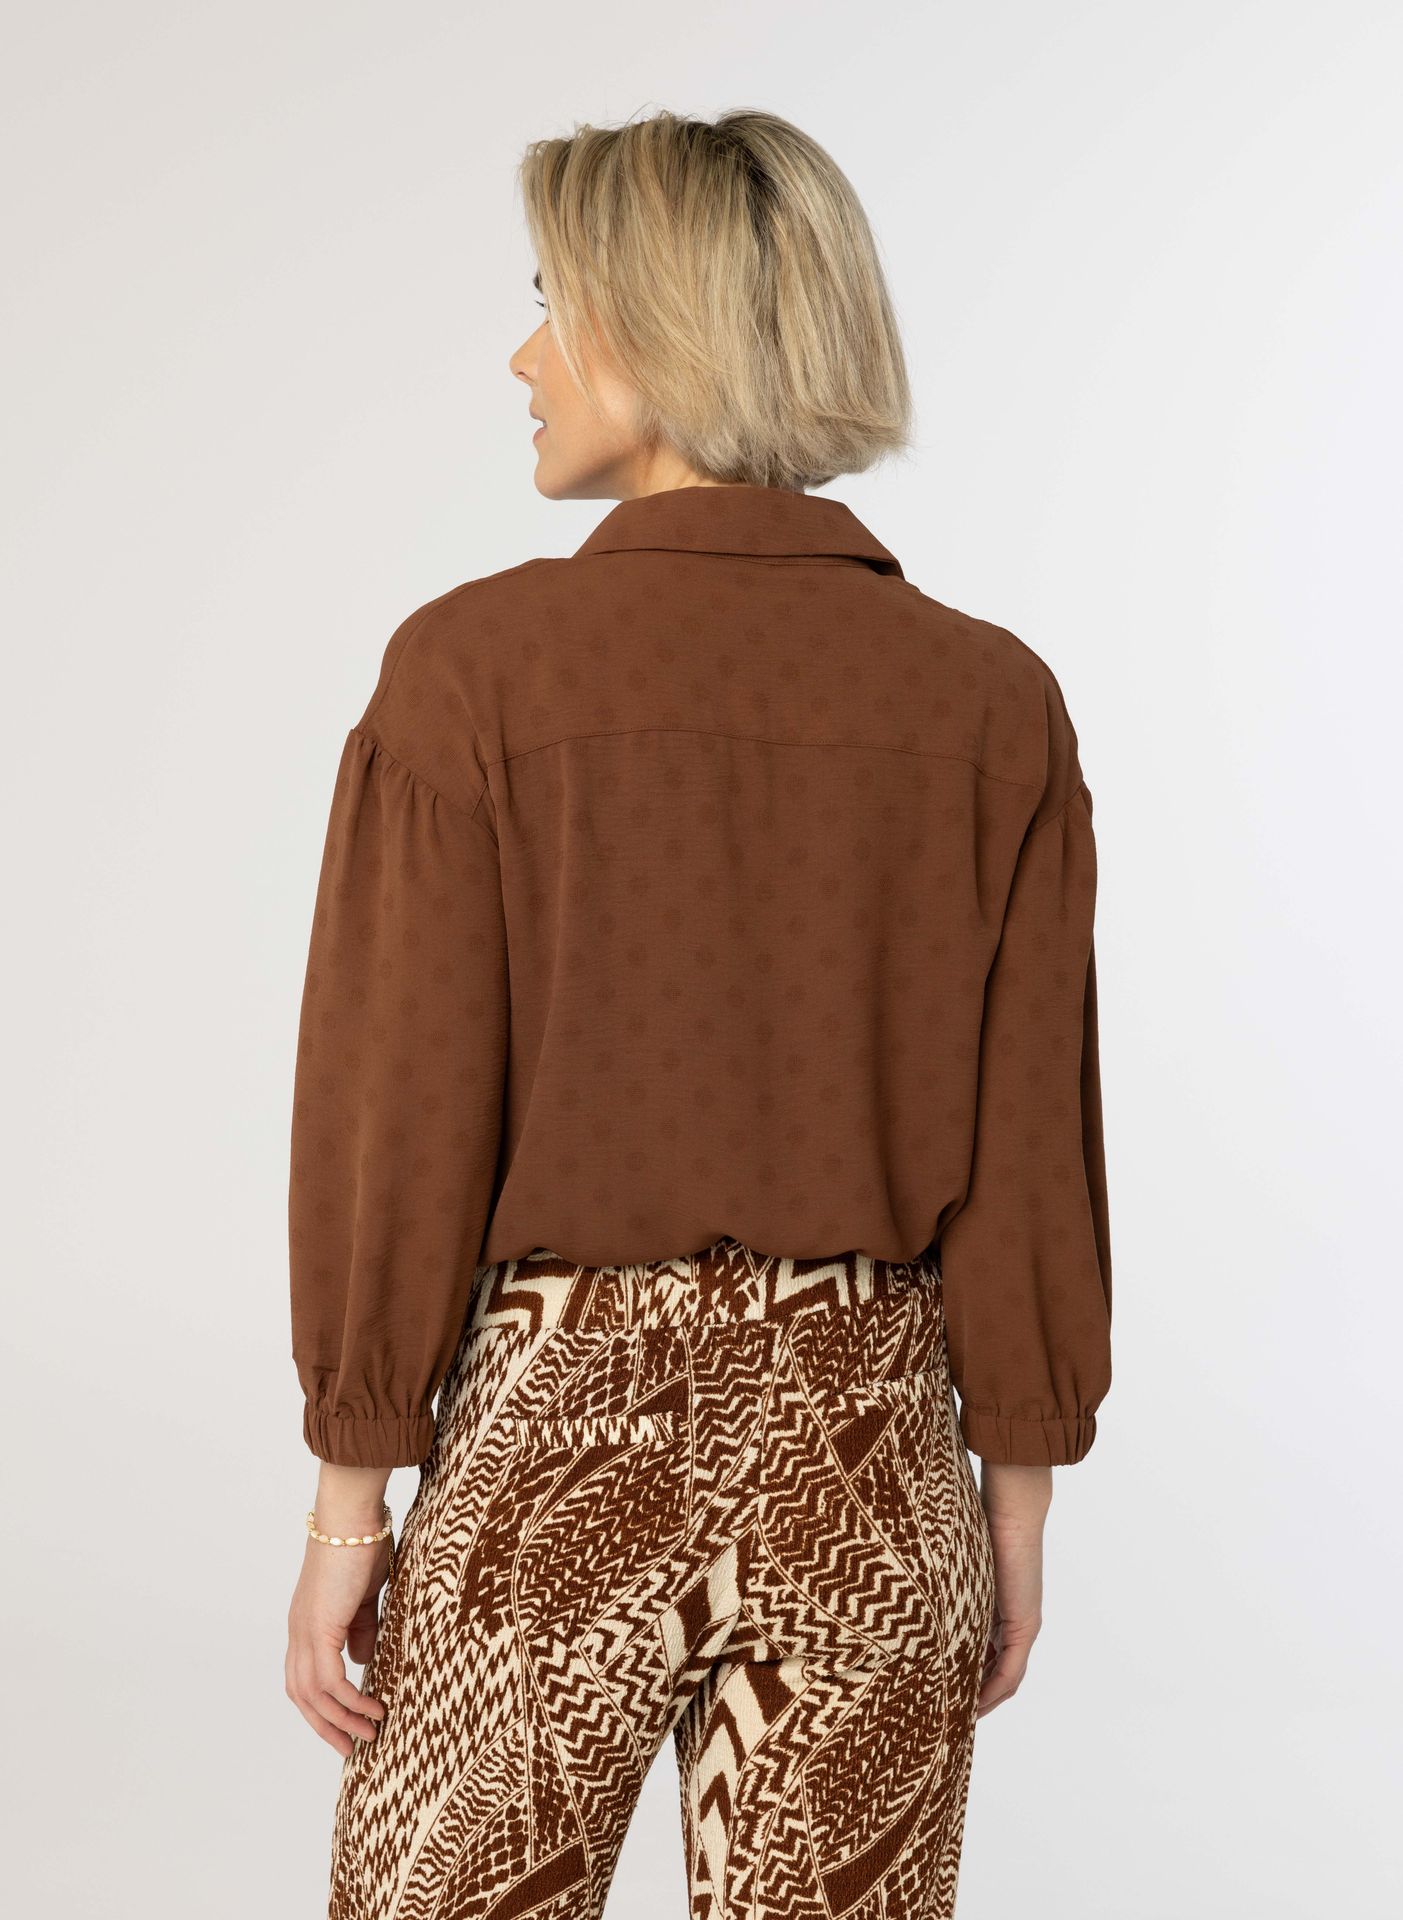 Norah Bruine blouse brown 214070-200